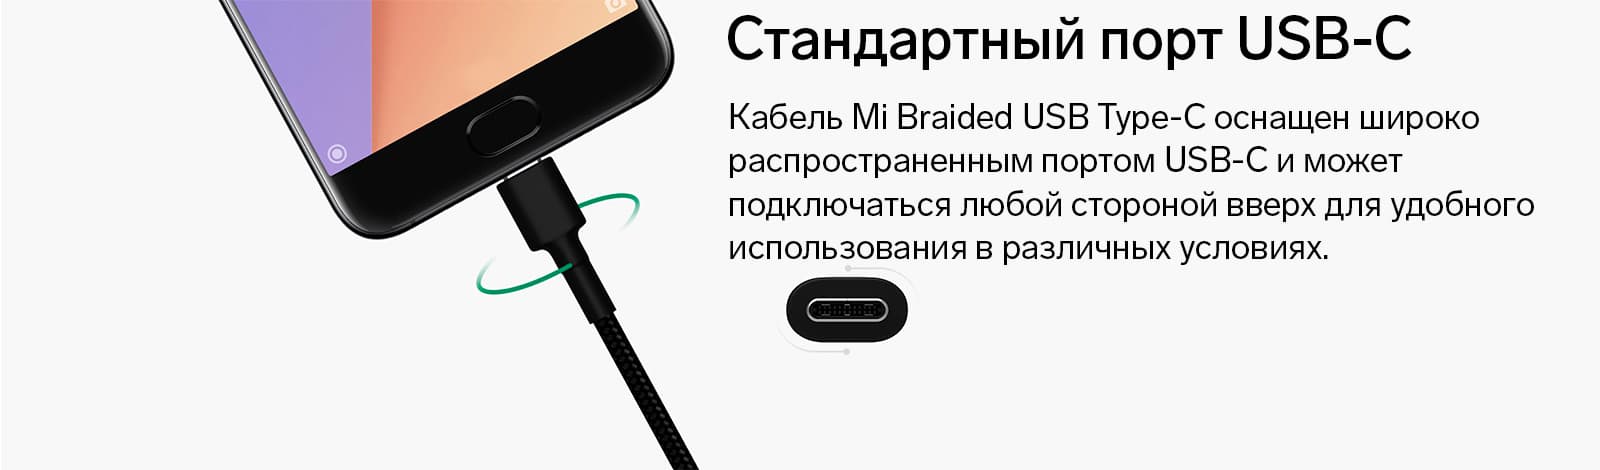 Кабель Mi Braided USB Type-C